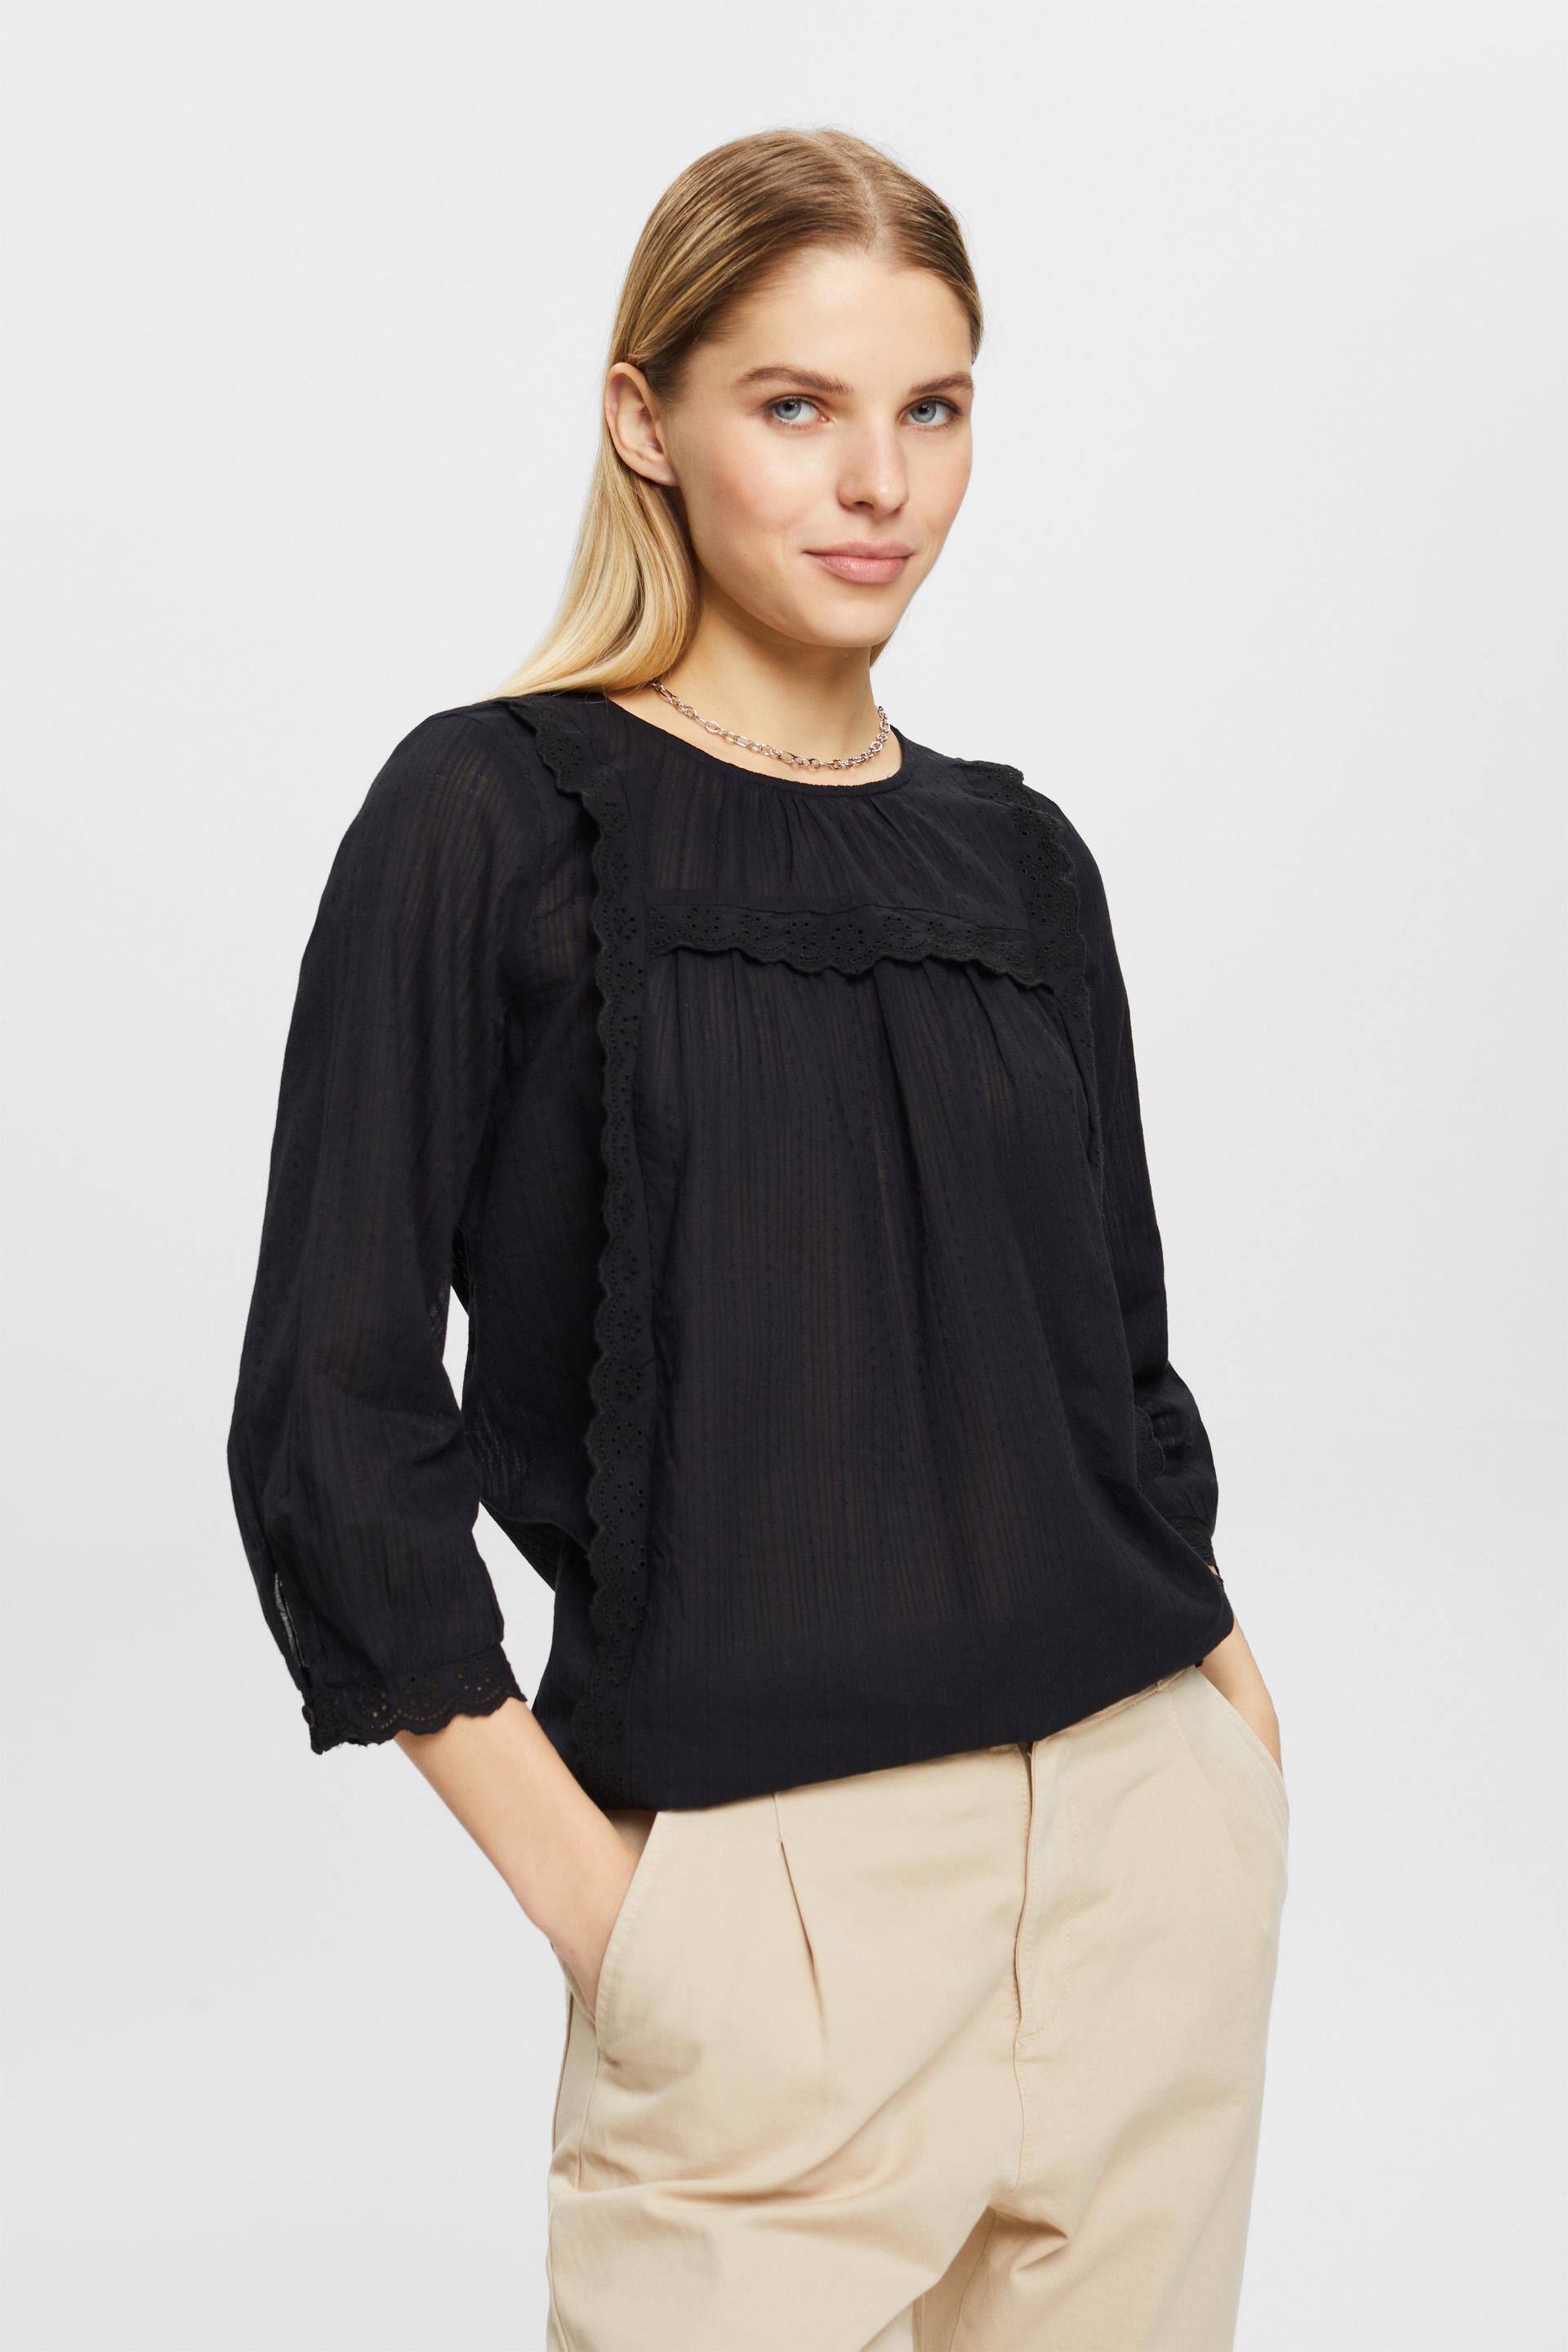 ESPRIT - Scallop-edge lace blouse at our Online Shop